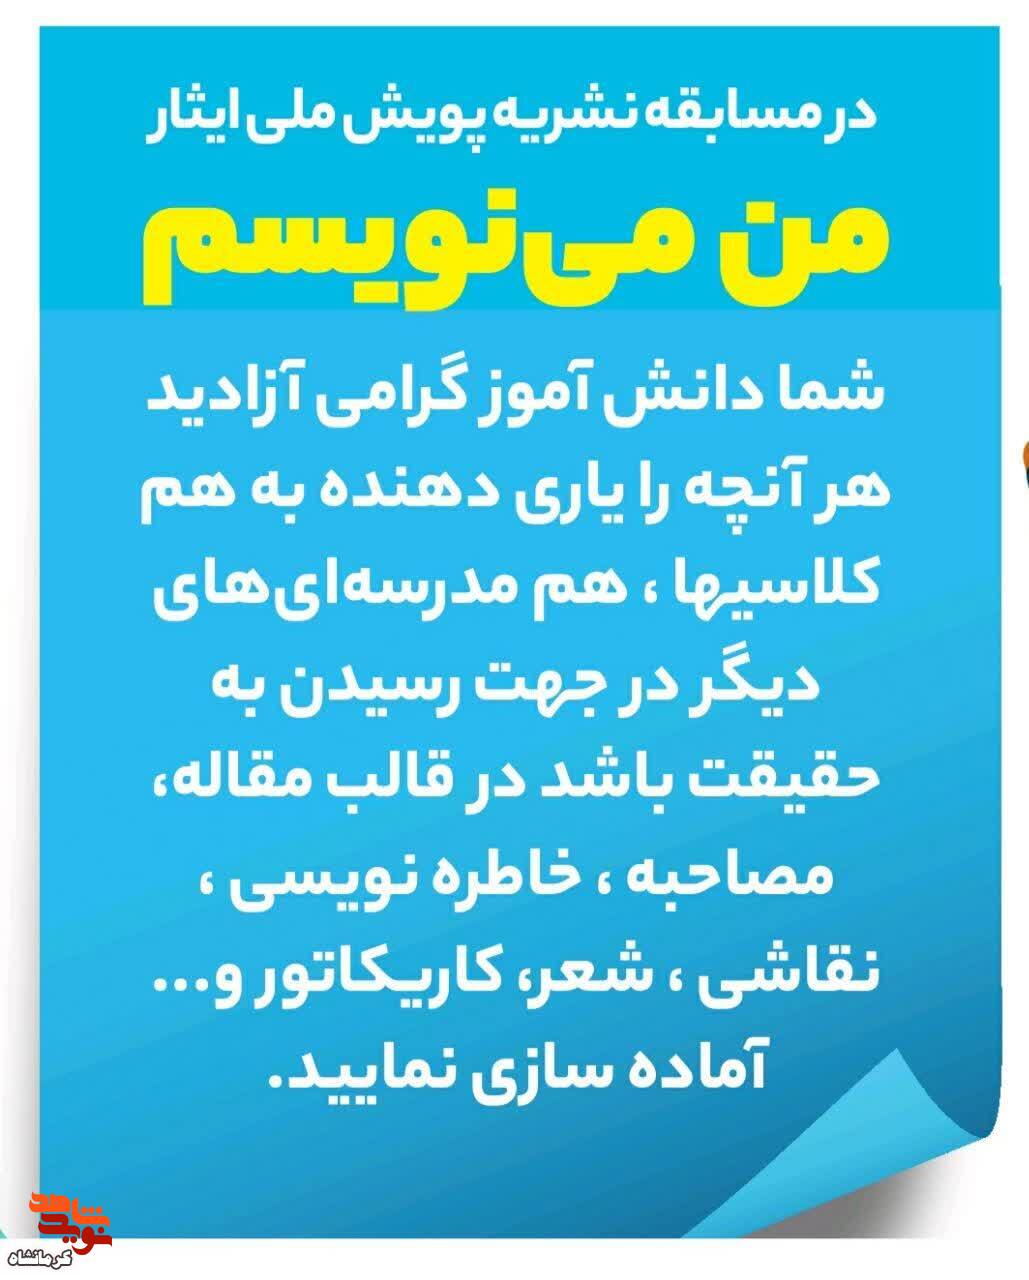 مسابقه بزرگ پویش ملی ایثار «من می نویسم» در کرمانشاه برگزار می شود